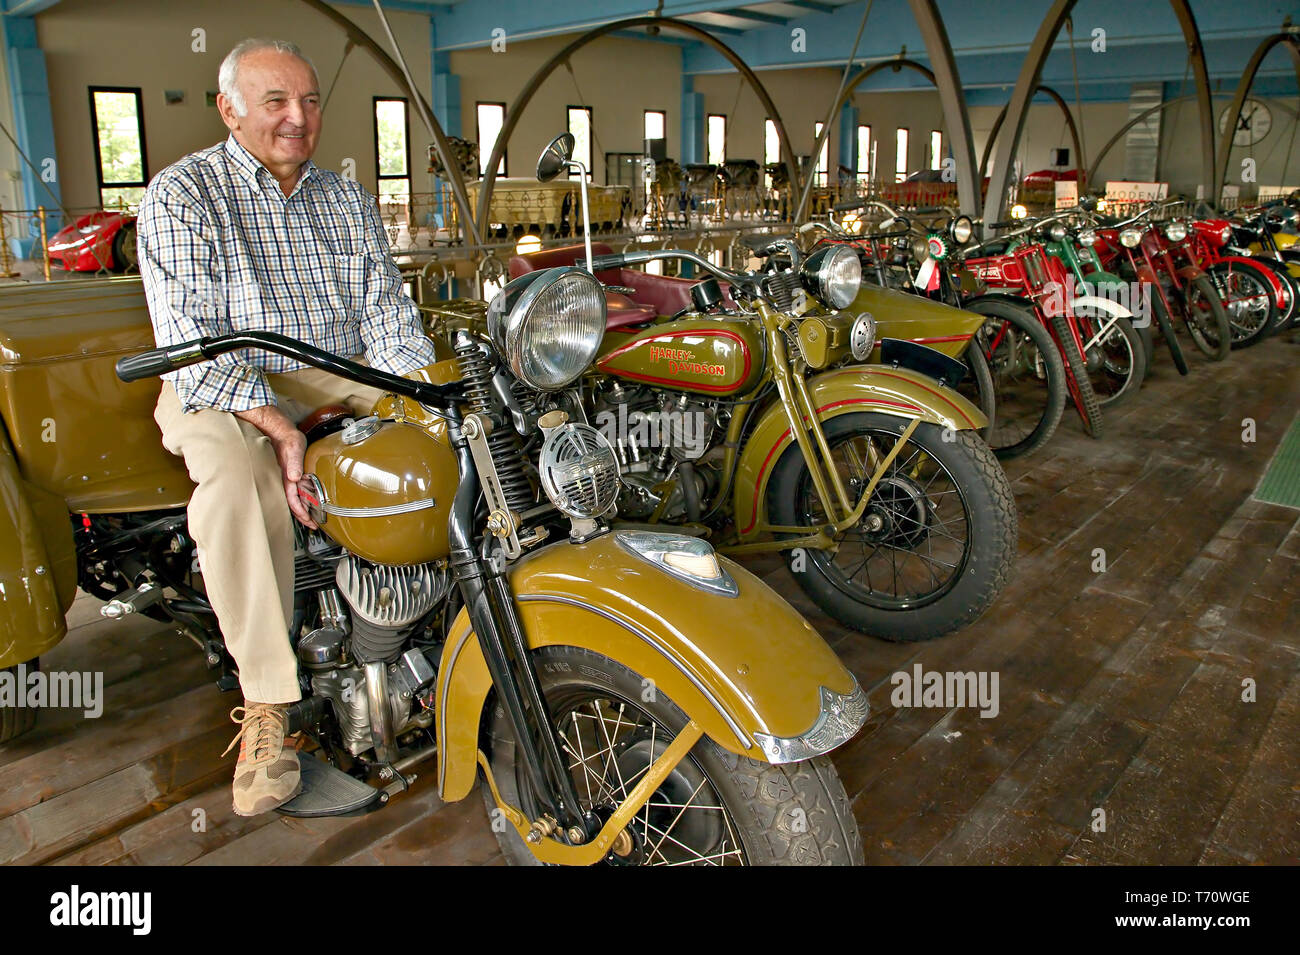 Collezione Umberto Panini (moto e auto d'epoca): Umberto Panini in sella alla sua Harley Davidson servizio. [Ita] Umberto Panini collezione di antichi Foto Stock